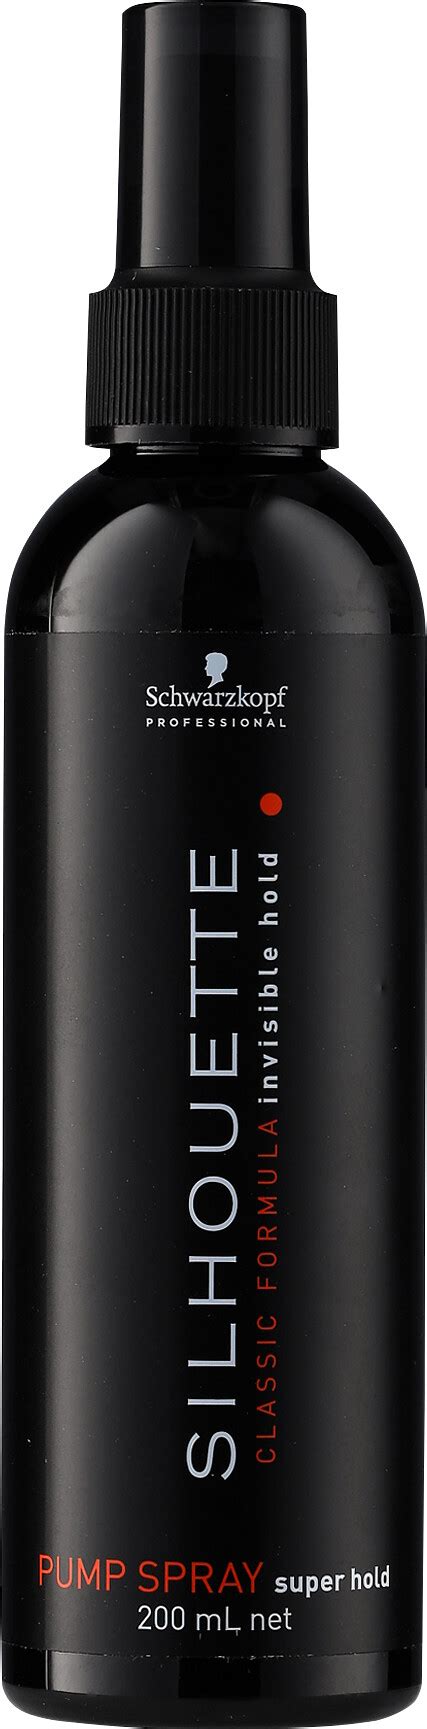 Schwarzkopf Professional Silhouette Super Hold Pump Spray